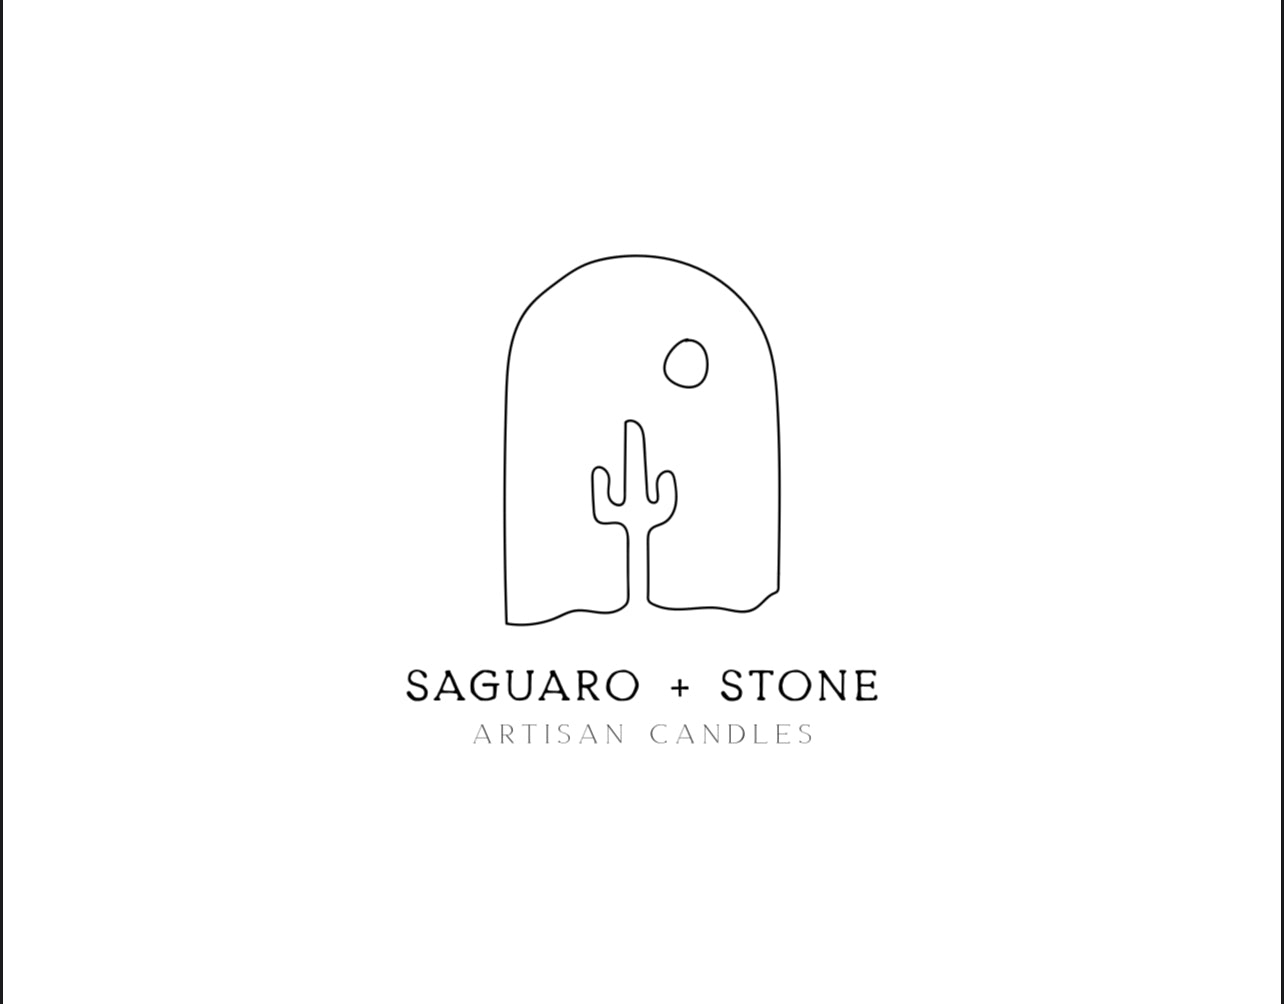 Saguaro + Stone